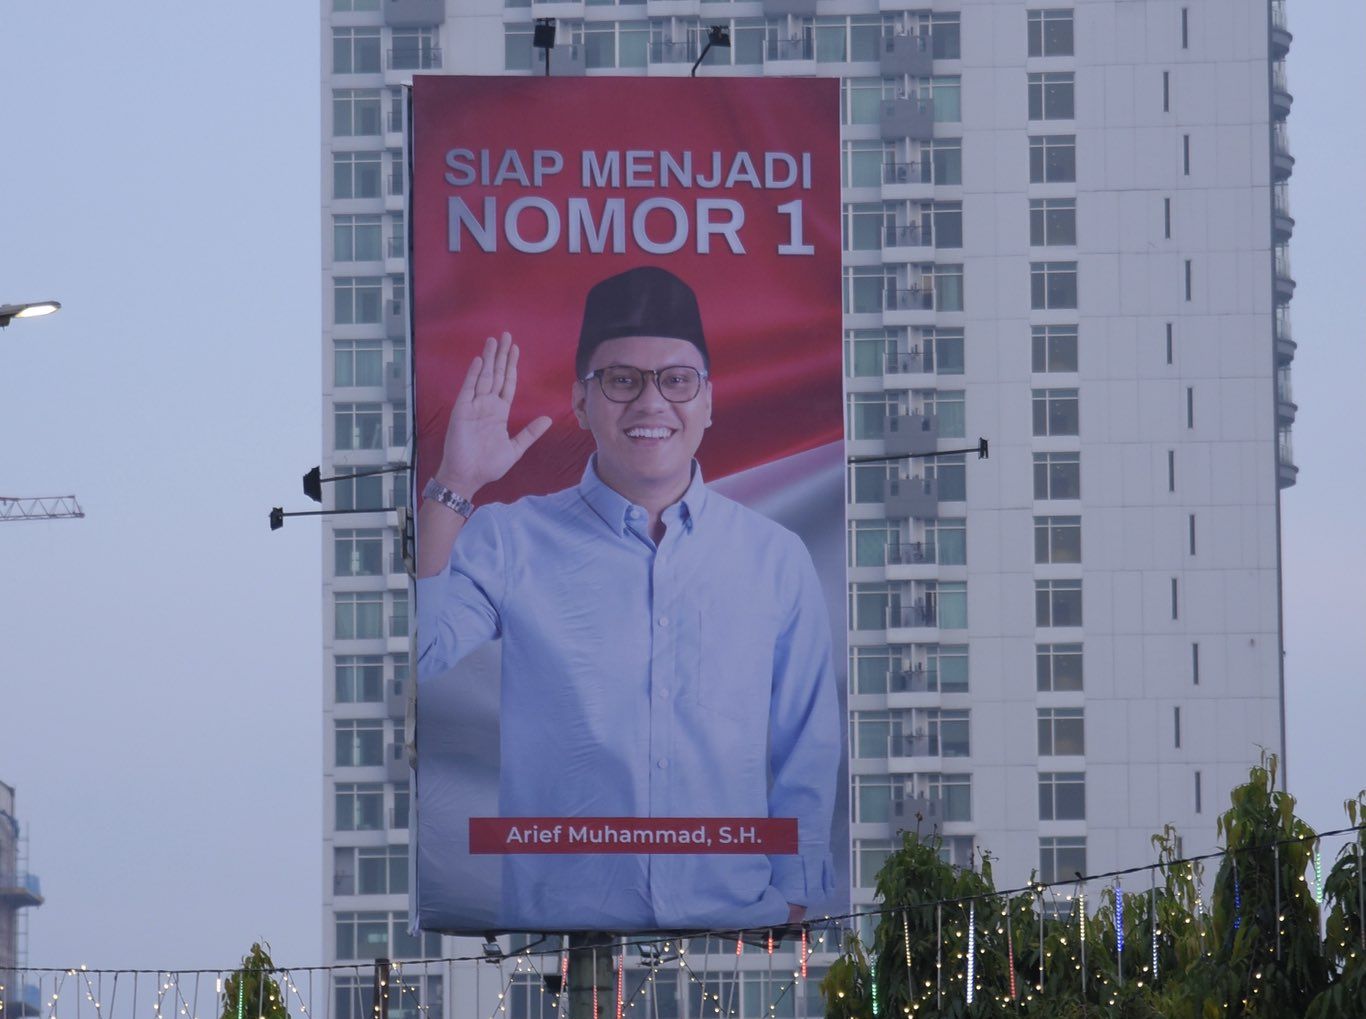 Arief Muhammad Terjun Ke Politik, Siap Jadi Nomor 1 